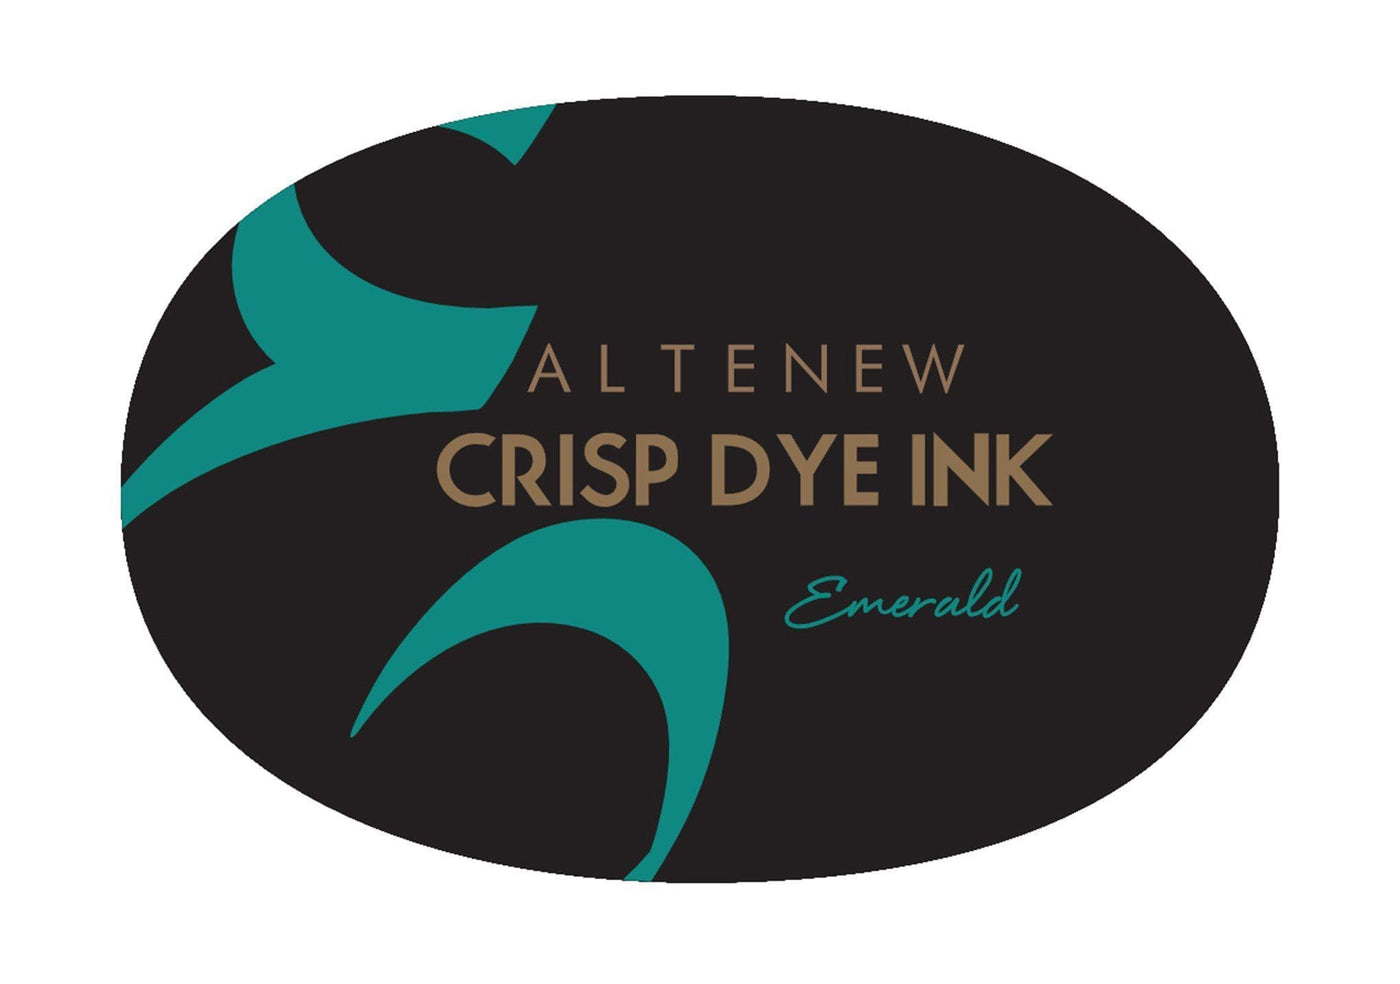 Stewart Superior Inks Emerald Crisp Dye Ink